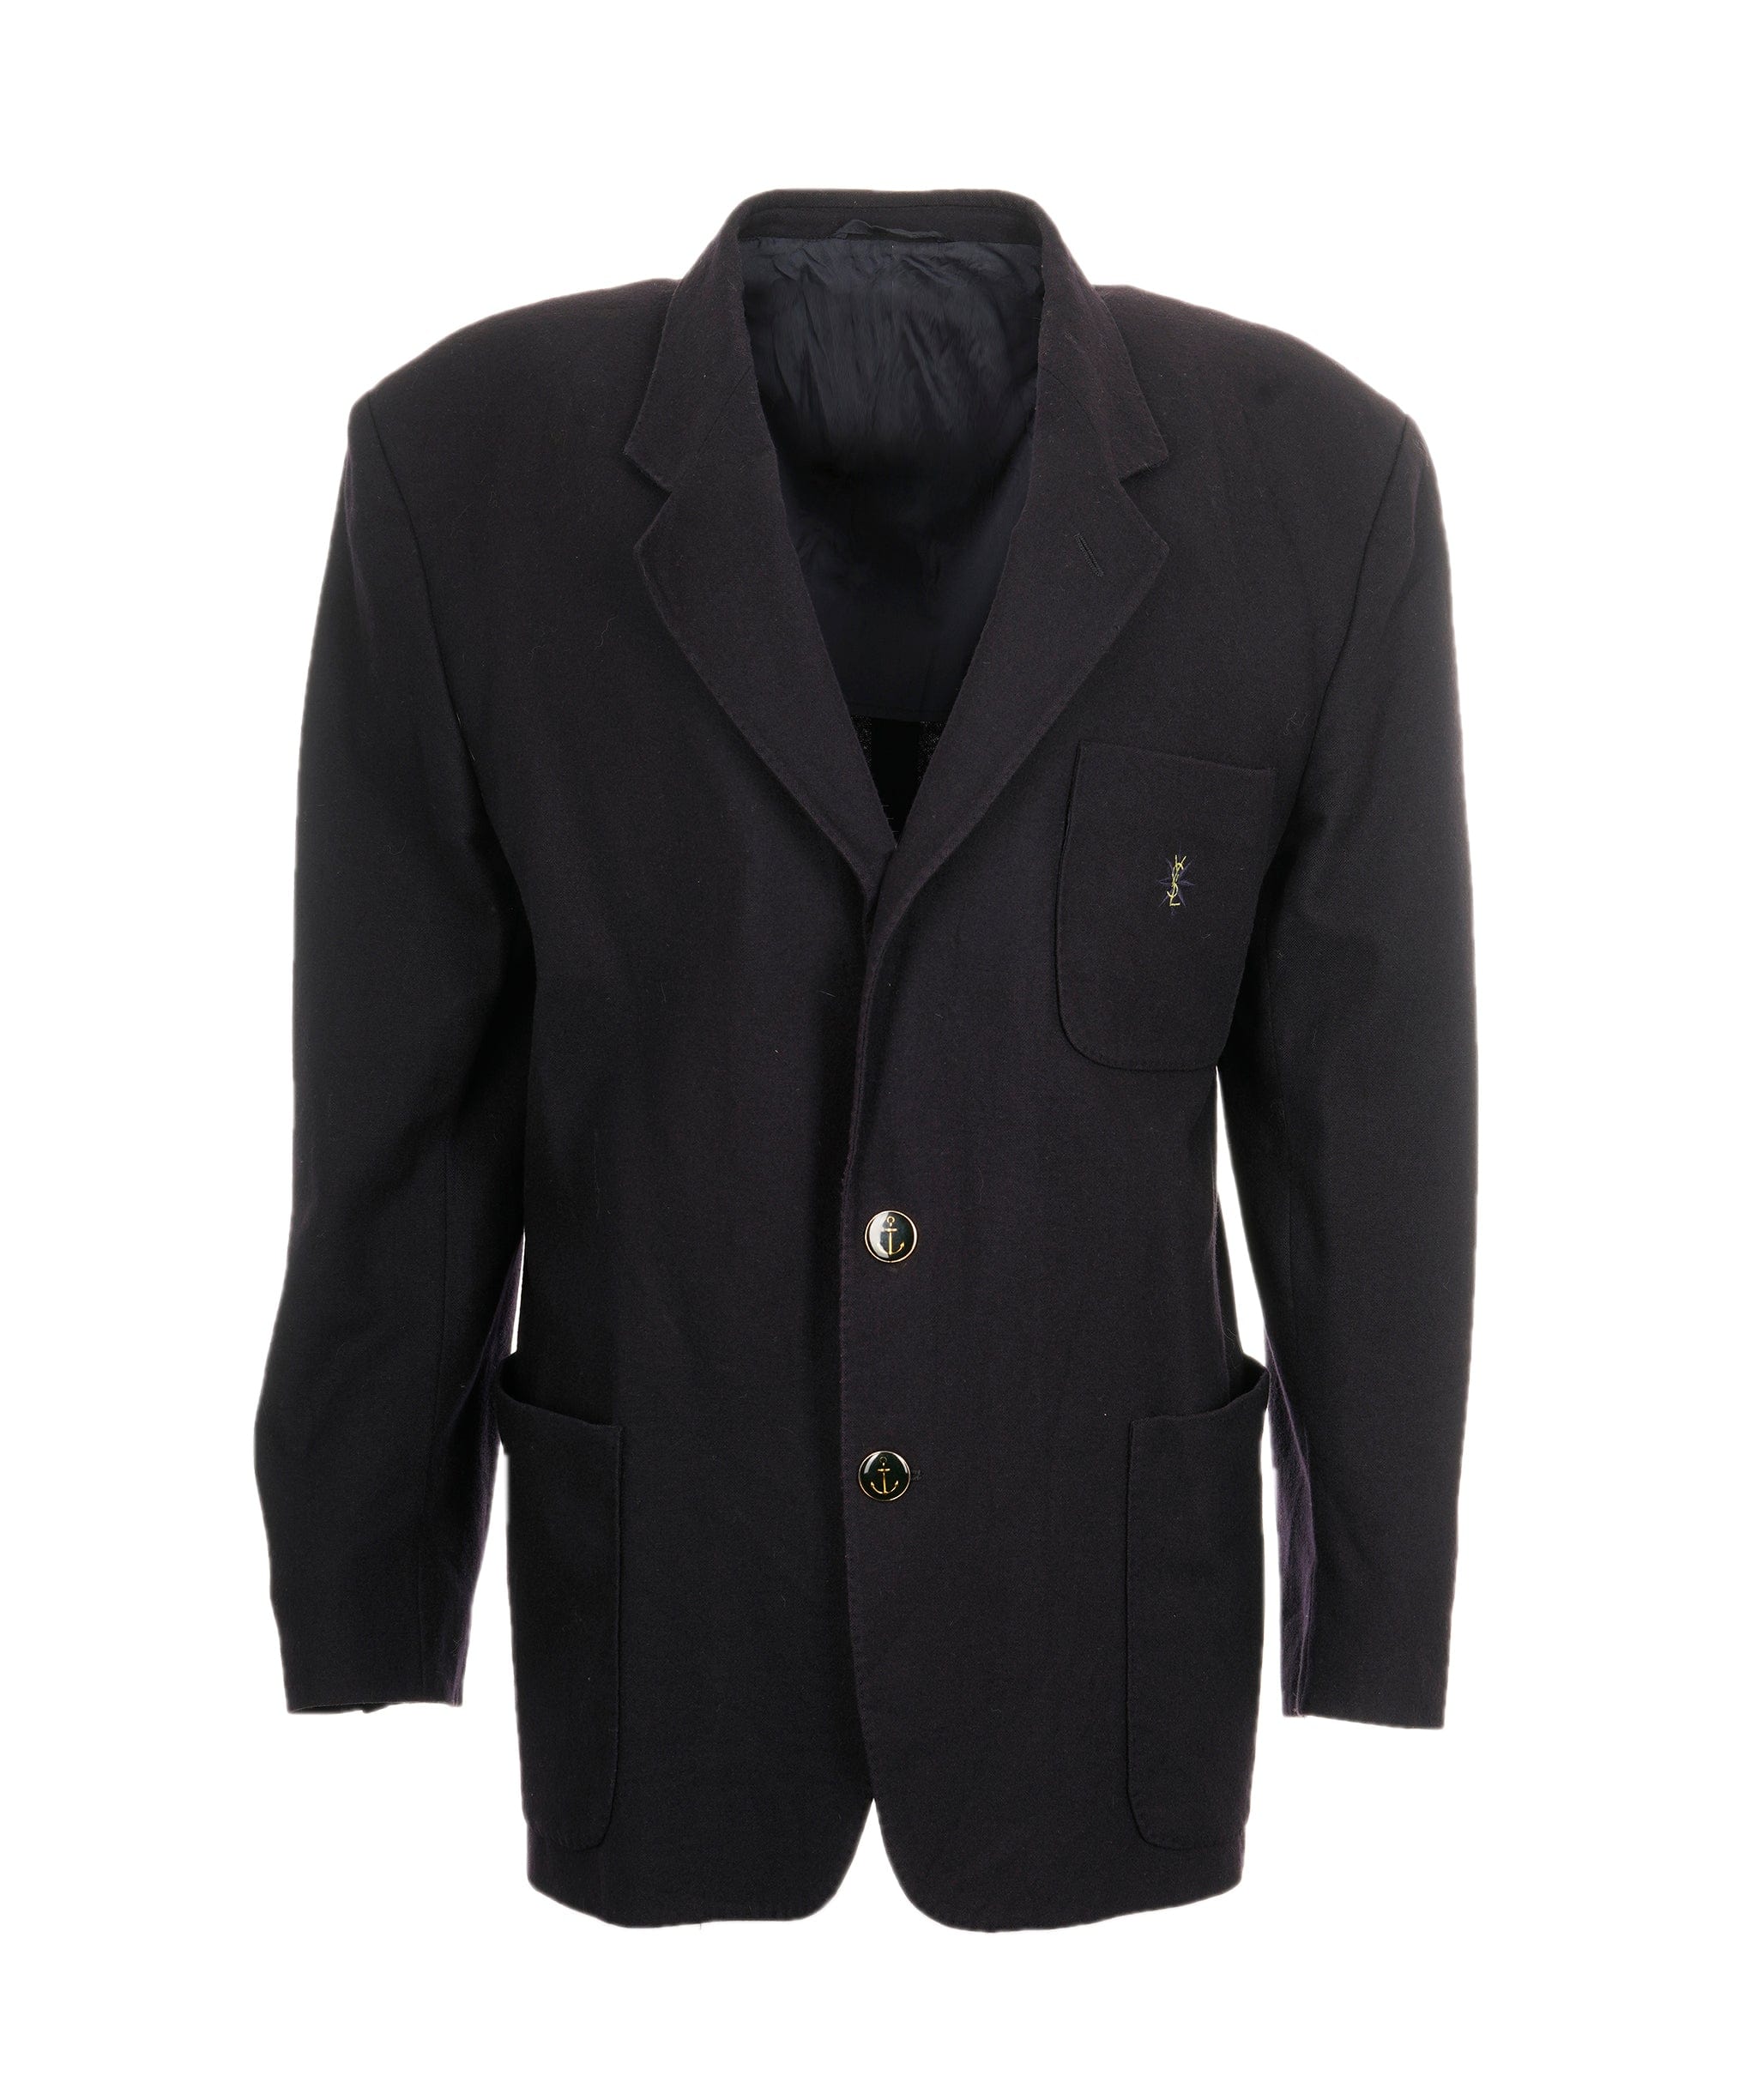 Yves Saint Laurent Mens 2 Button Blazeer Jacket IT54 (2XL) Navy Blue ASL9354